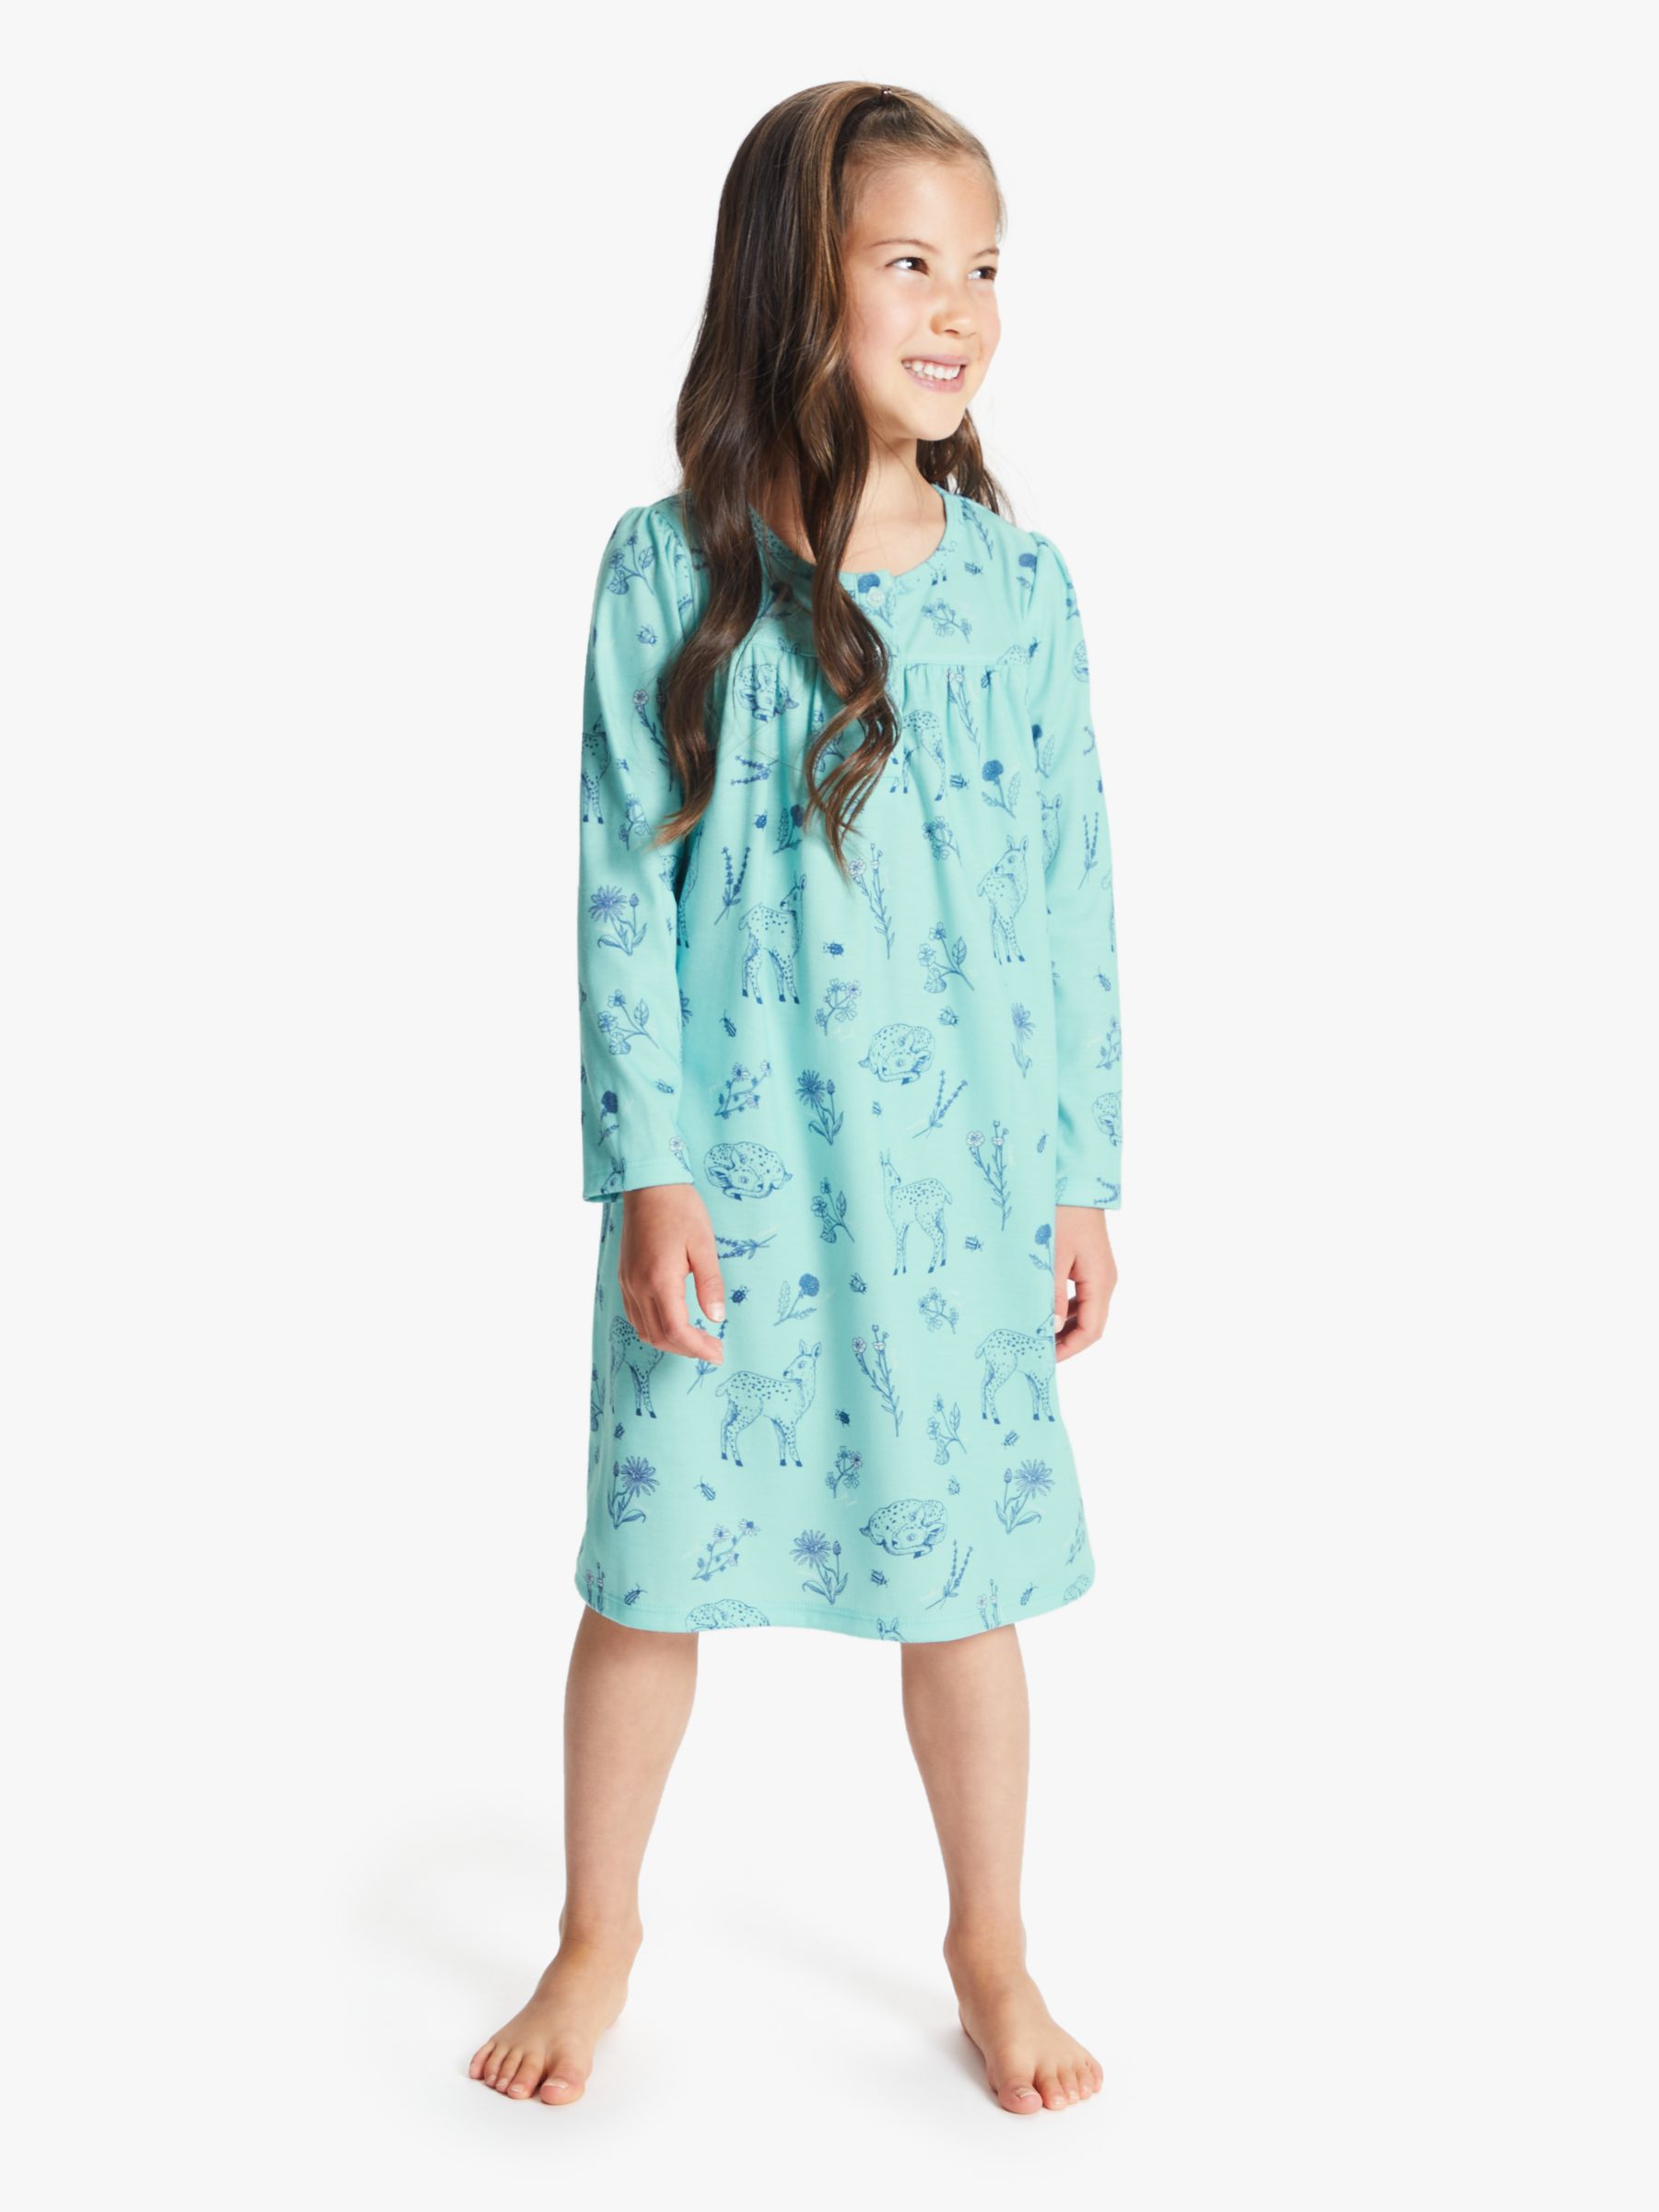 nighty dresses for girls